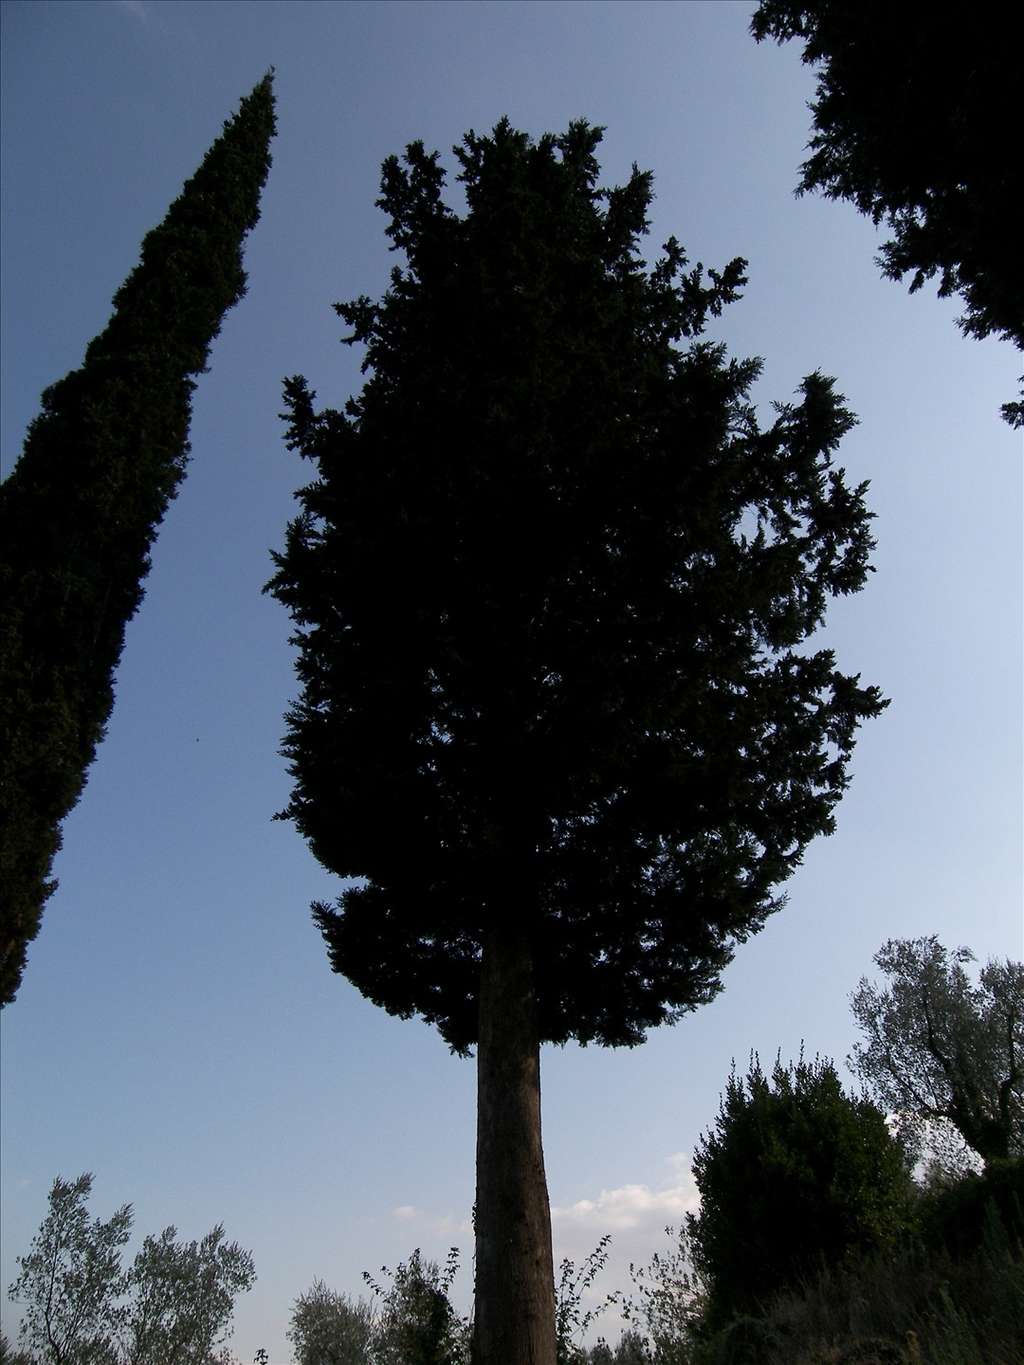 Le cyprès de Provence peut atteindre 30 mètres de hauteur. © aldoaldoz, Flickr CC y nc sa 2.0 